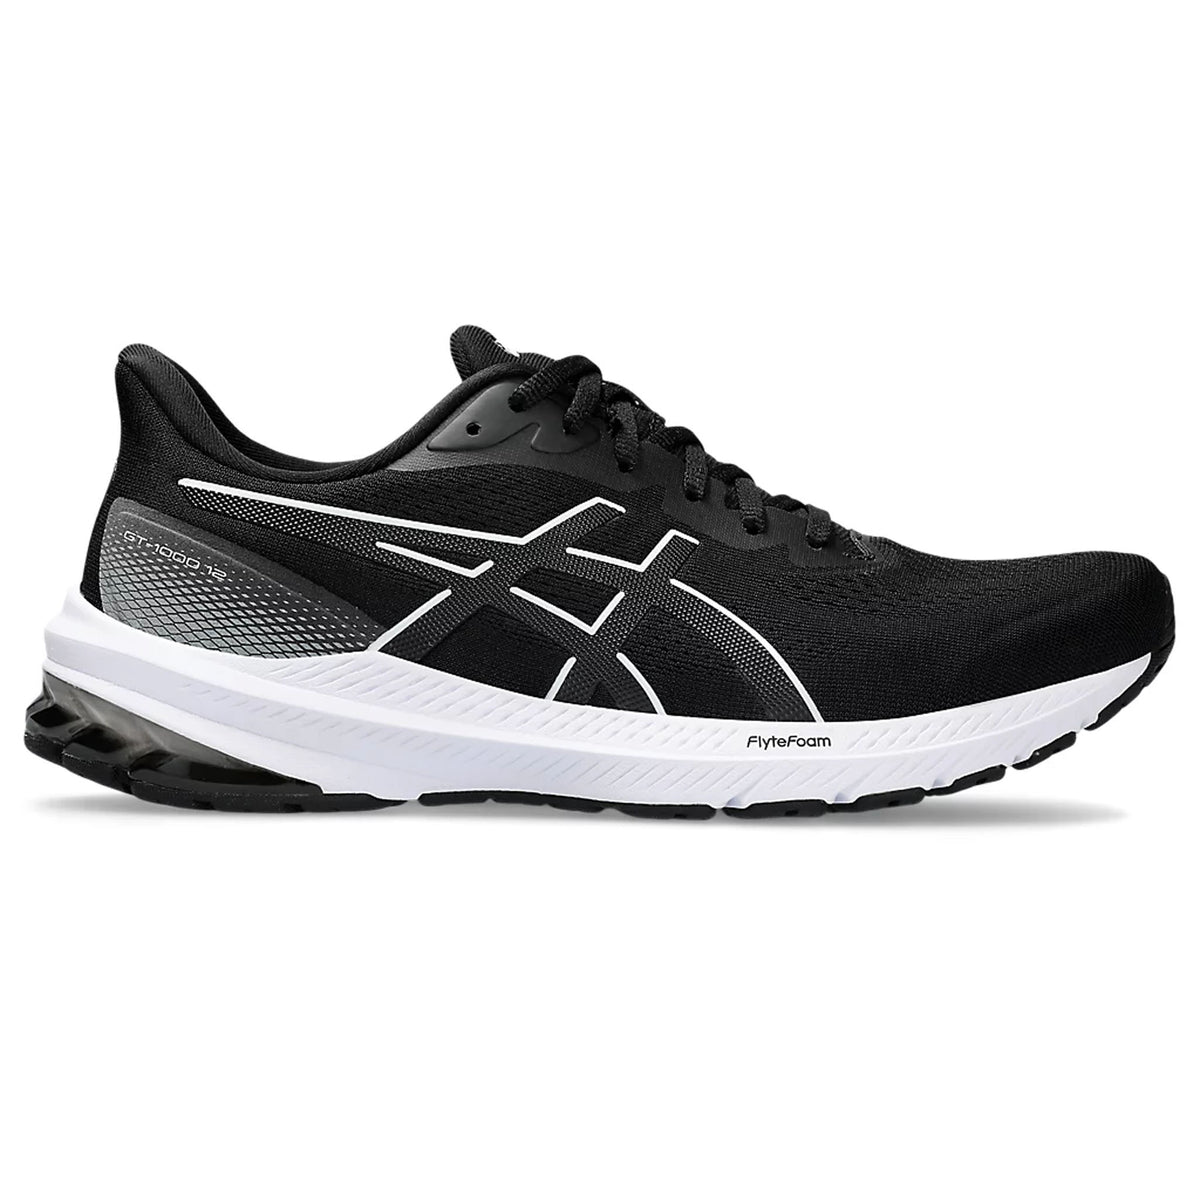 Asics GT 1000 12 Mens Running Shoes: Black/White